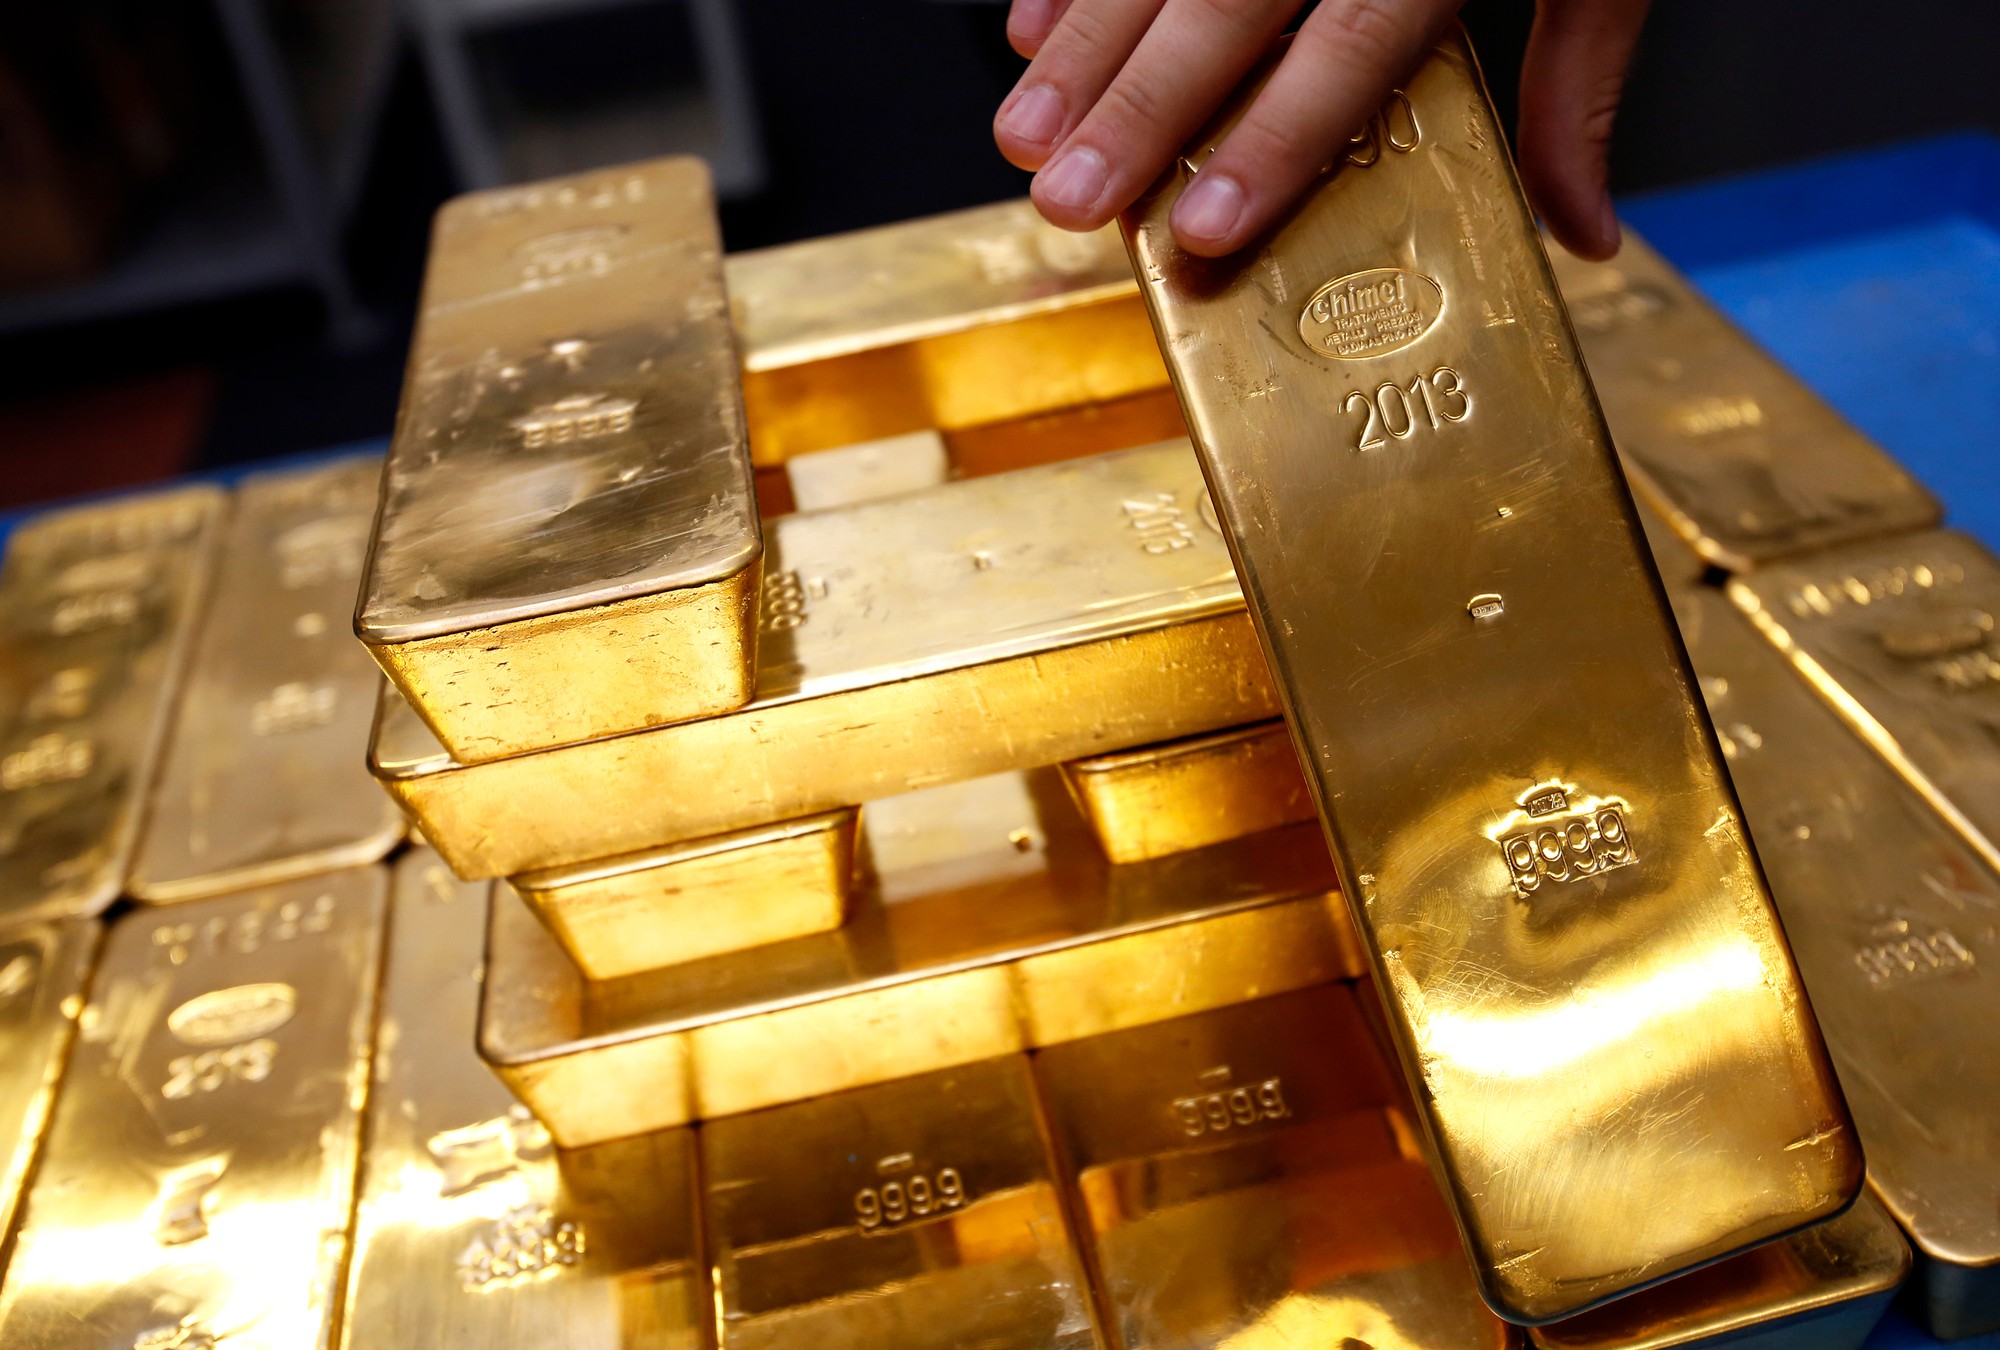 Vàng SJC là một nhãn hiệu vàng do Công ty Vàng bạc Đá quý Sài Gòn sản xuất